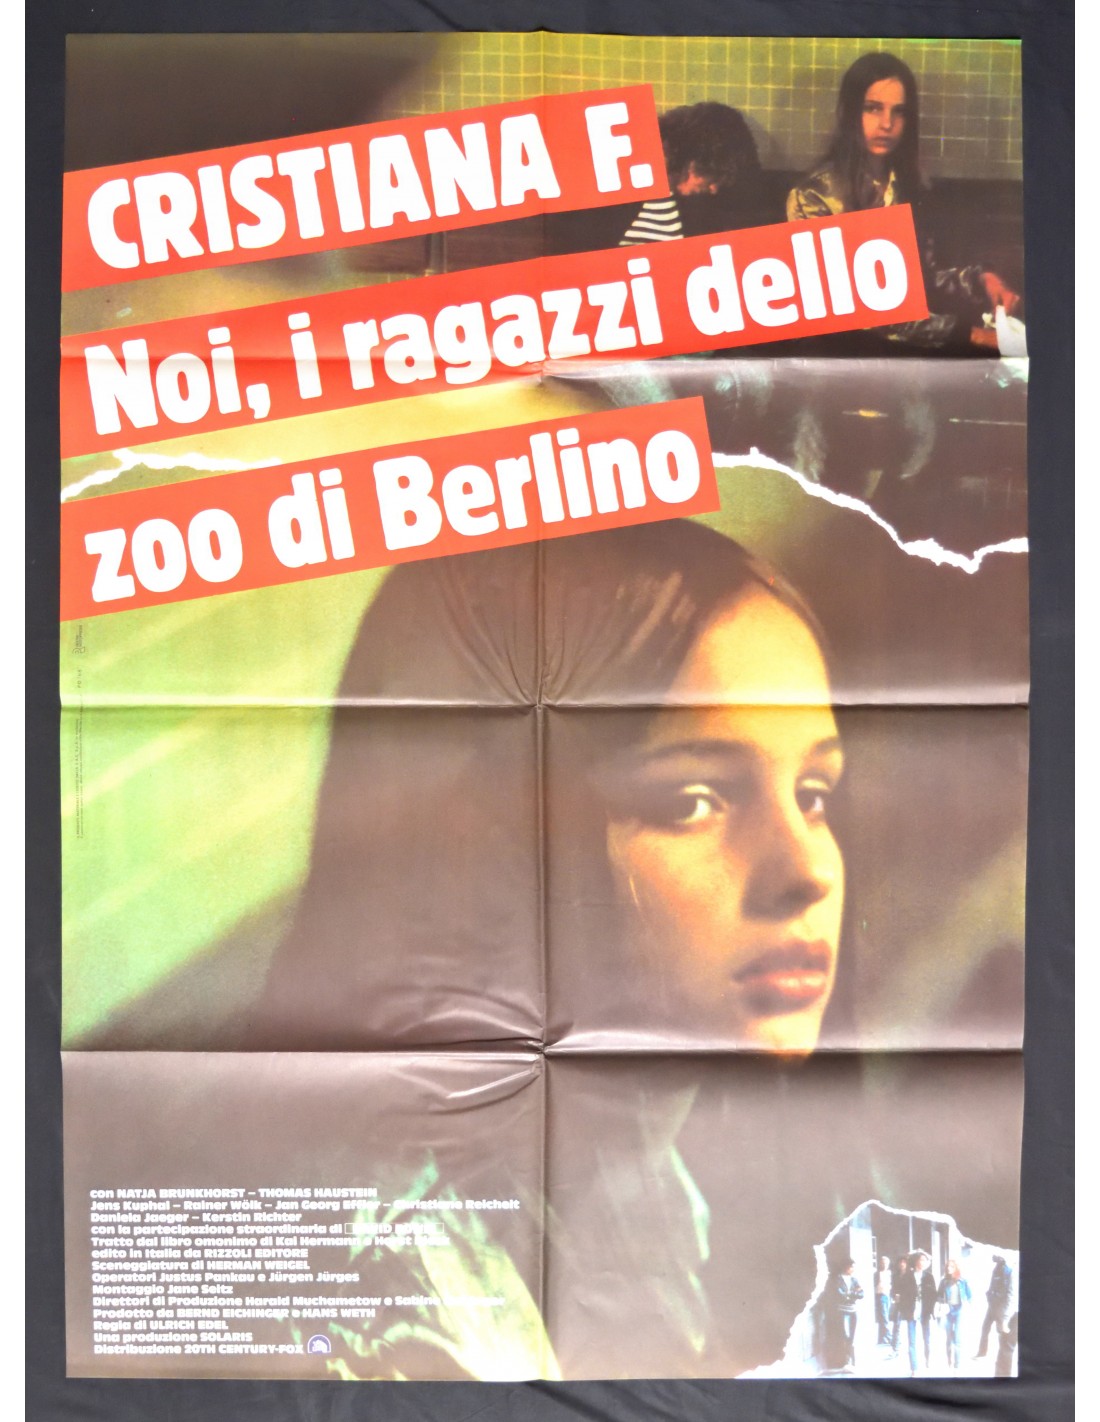 manifesto CRISTIANA F noi i ragazzzi dello zoo di berlino natja brunkhorst  A243